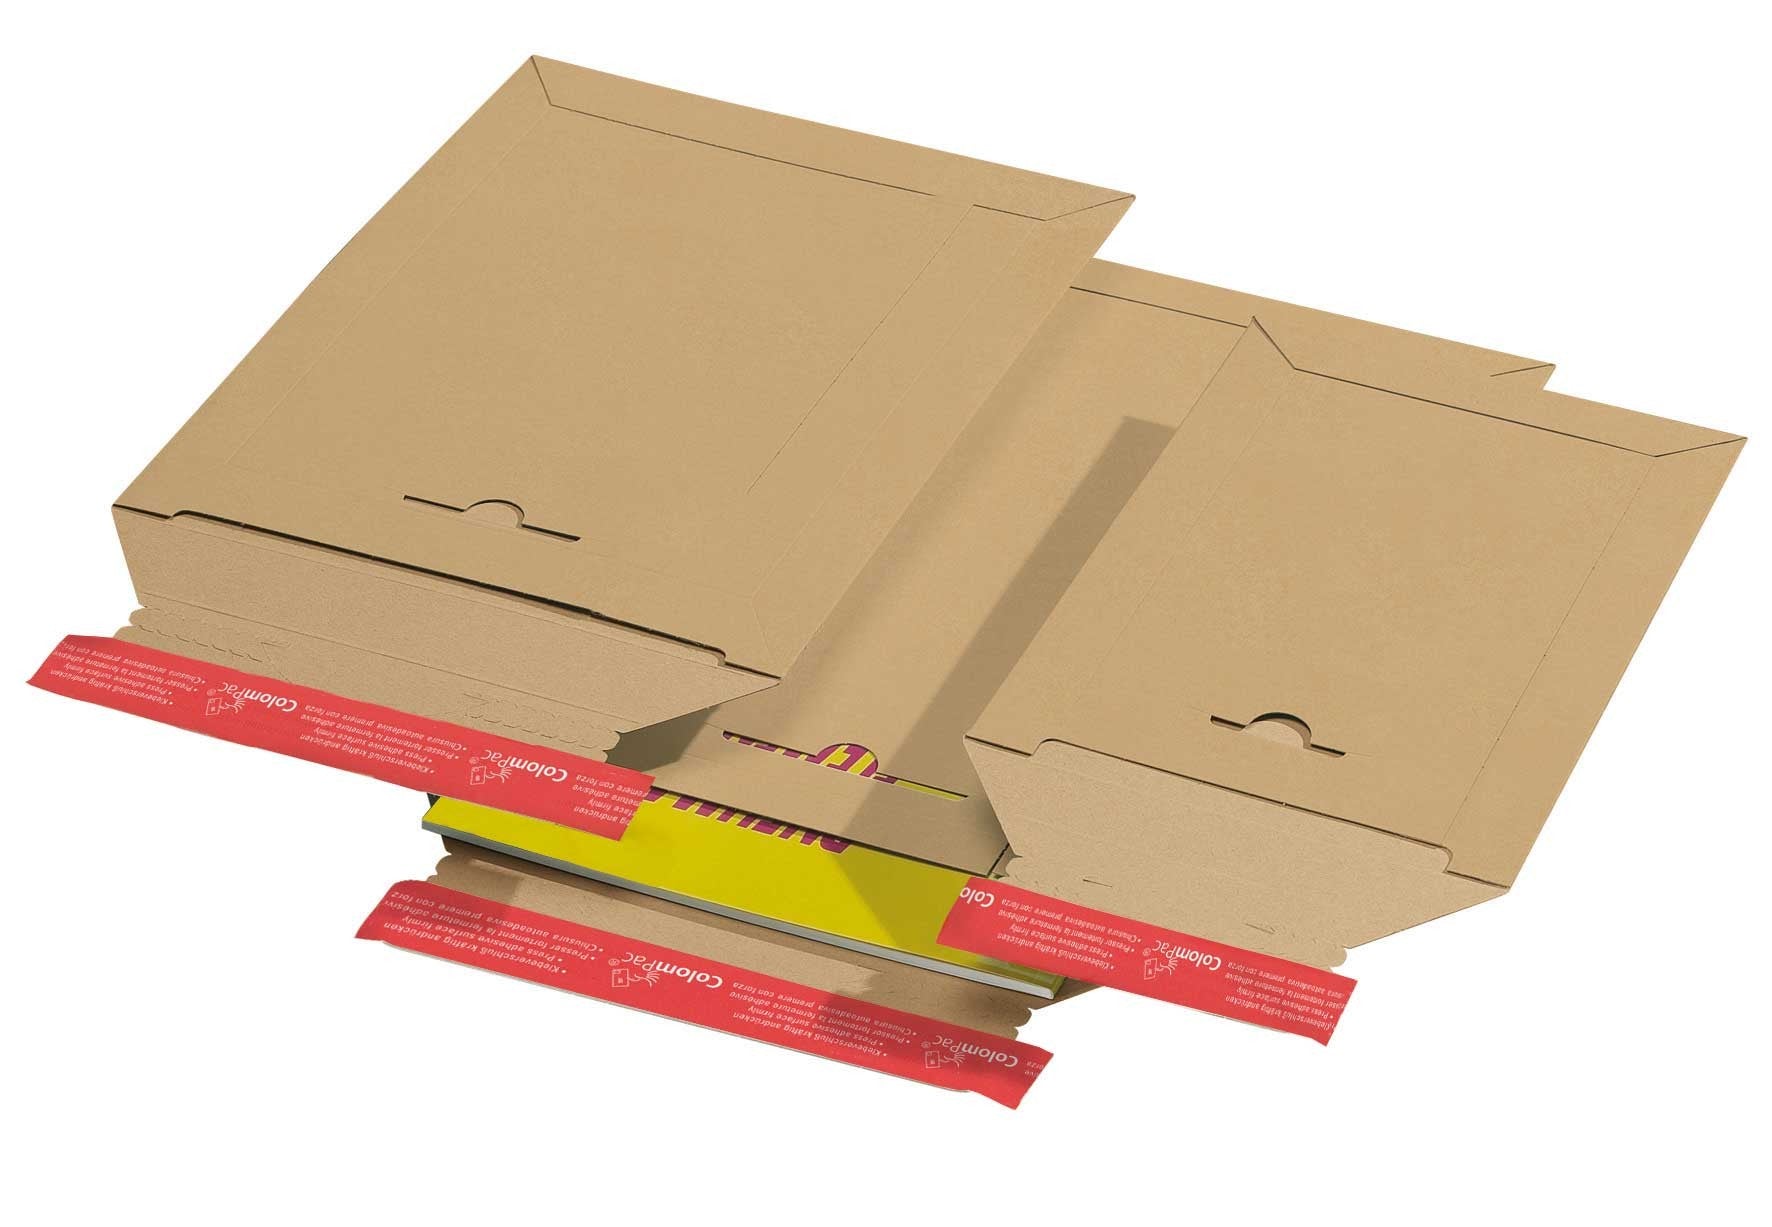 Pochette dexpédition refermable en carton rigide brun 175x250